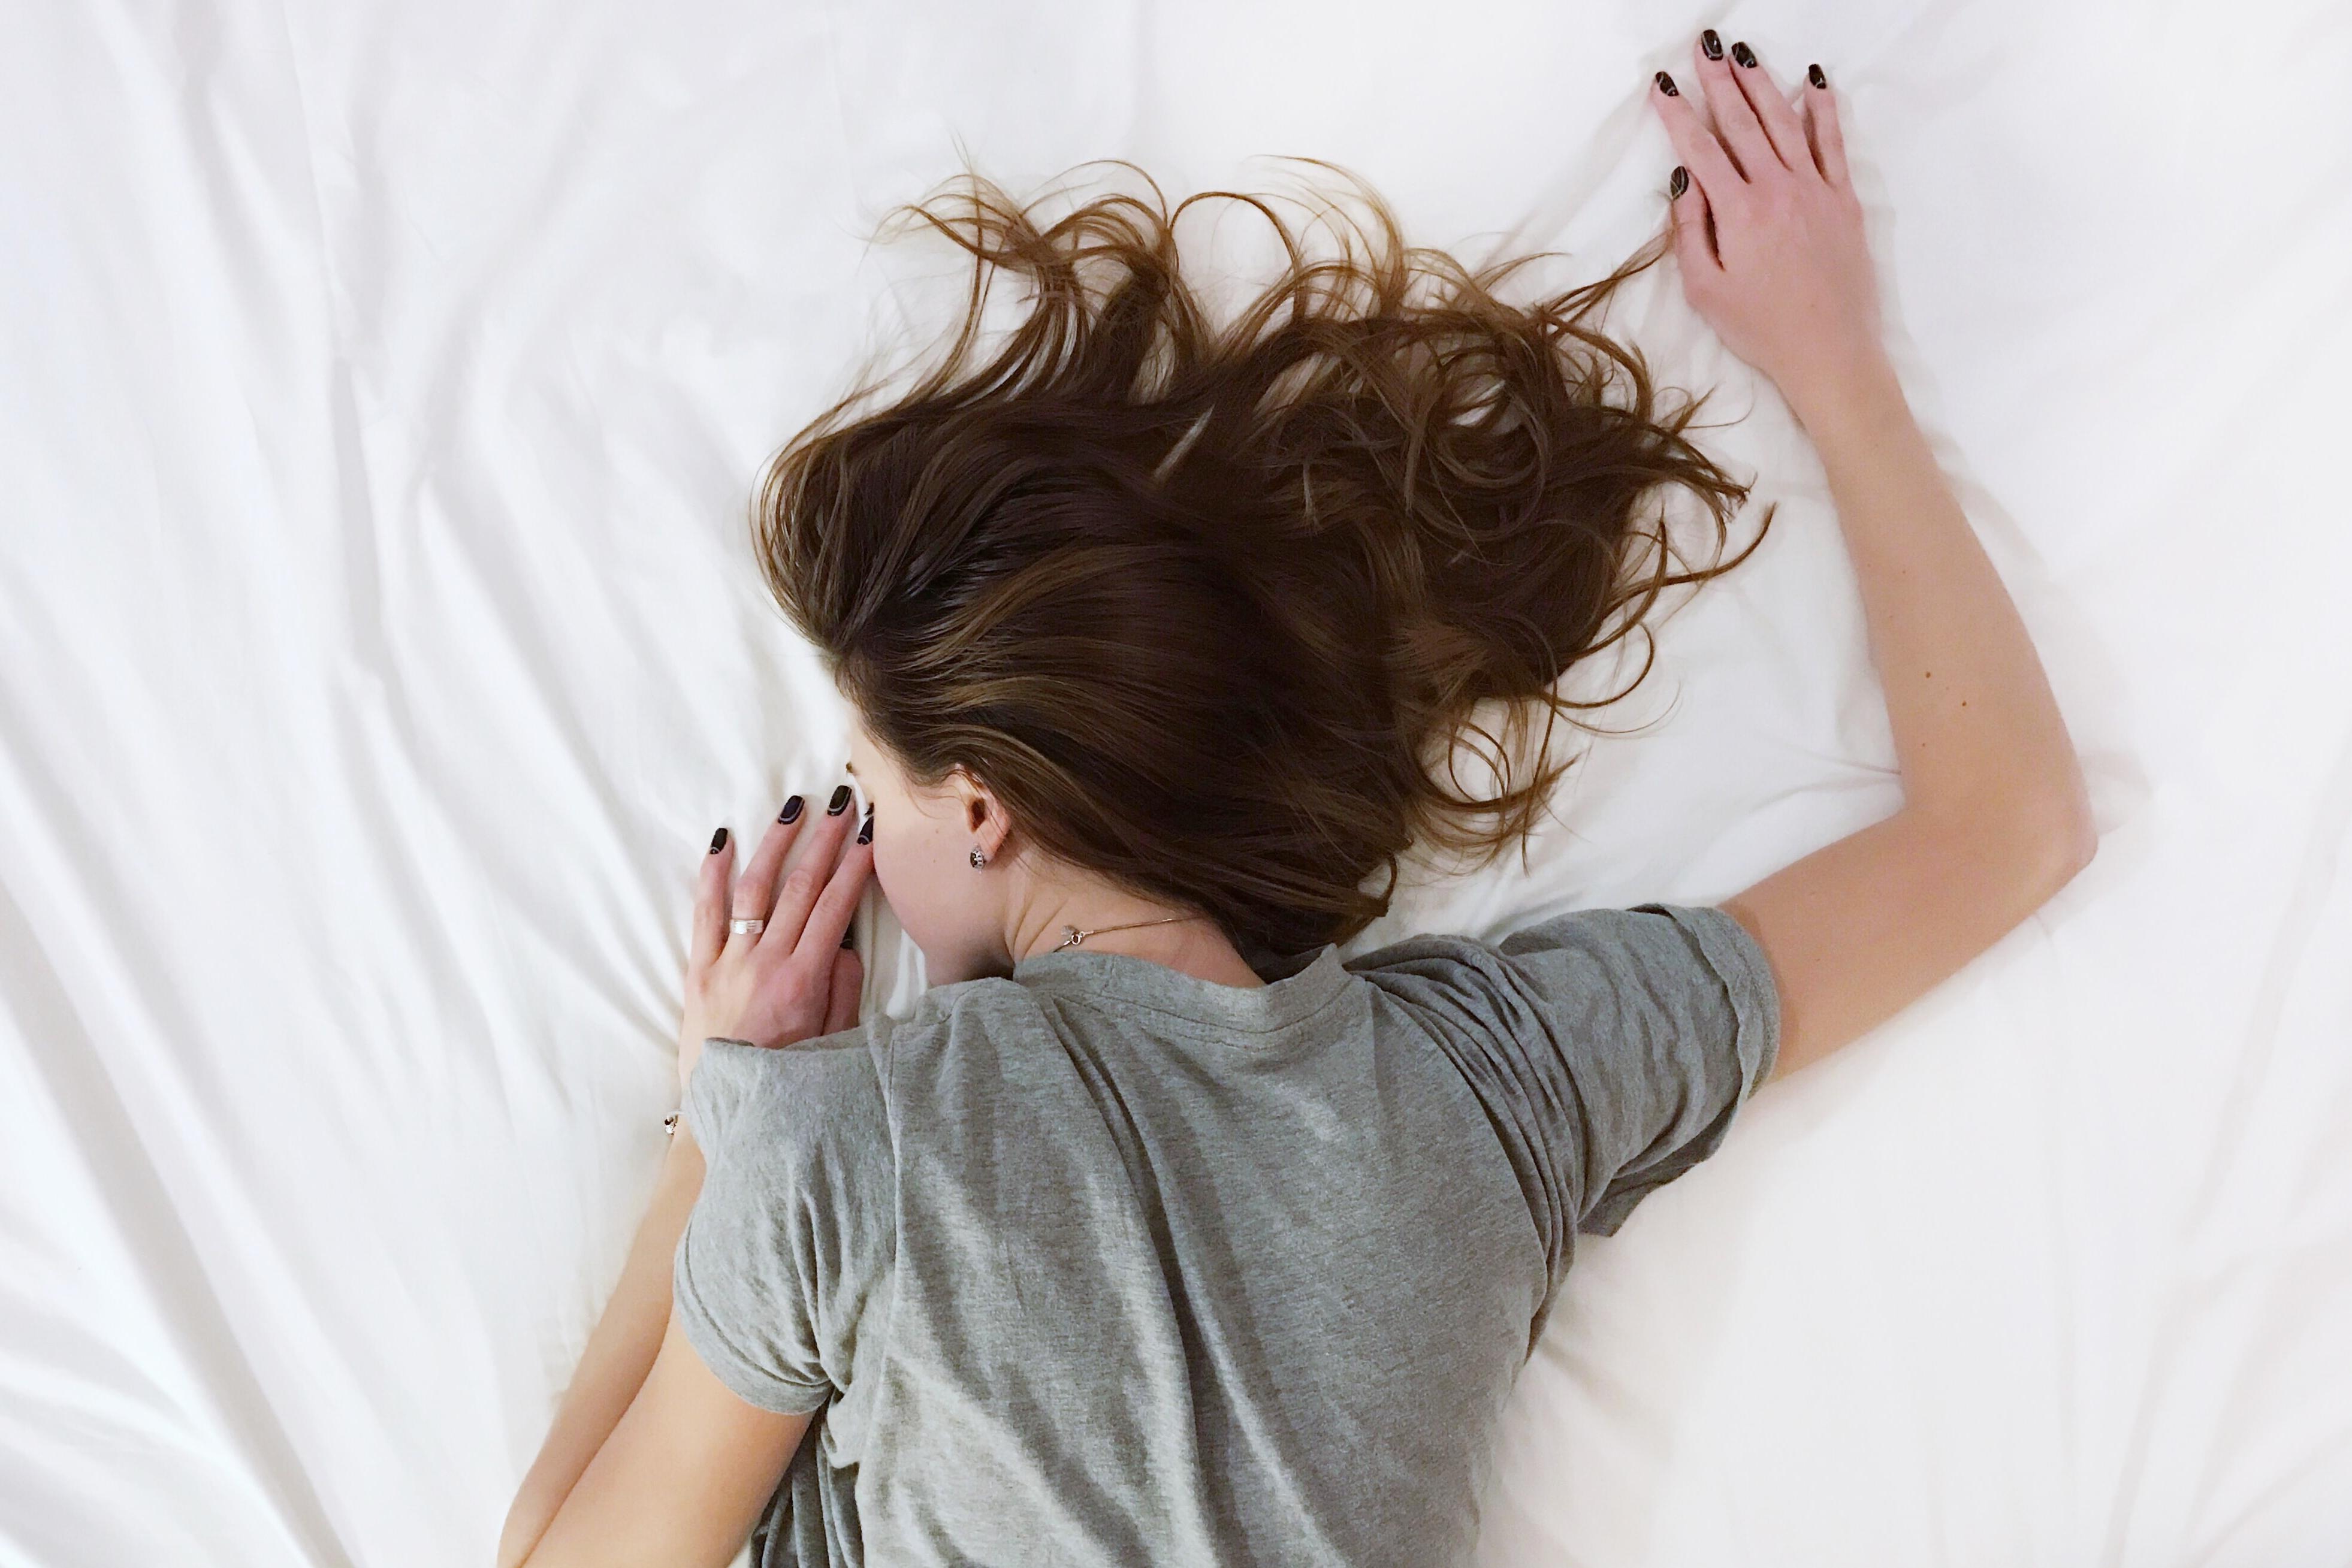 Недостаток сна и его переизбыток негативно сказываются на внутренних процессах, провоцируют воспаления и отеки